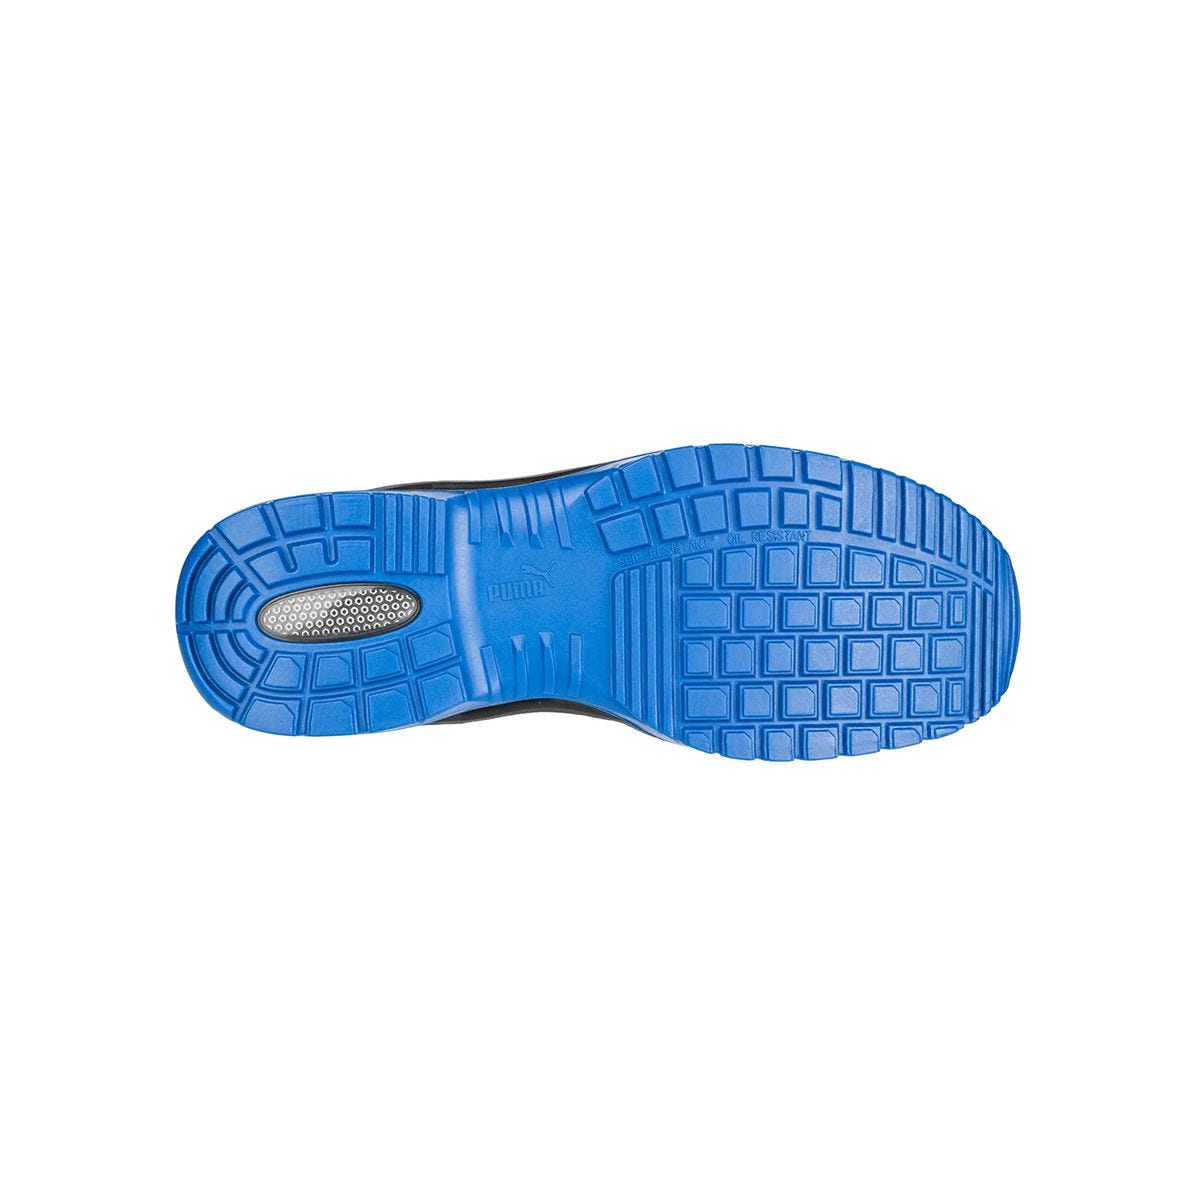 Chaussures de sécurité Argon RX low S3 ESD SRC bleu - Puma - Taille 49 3